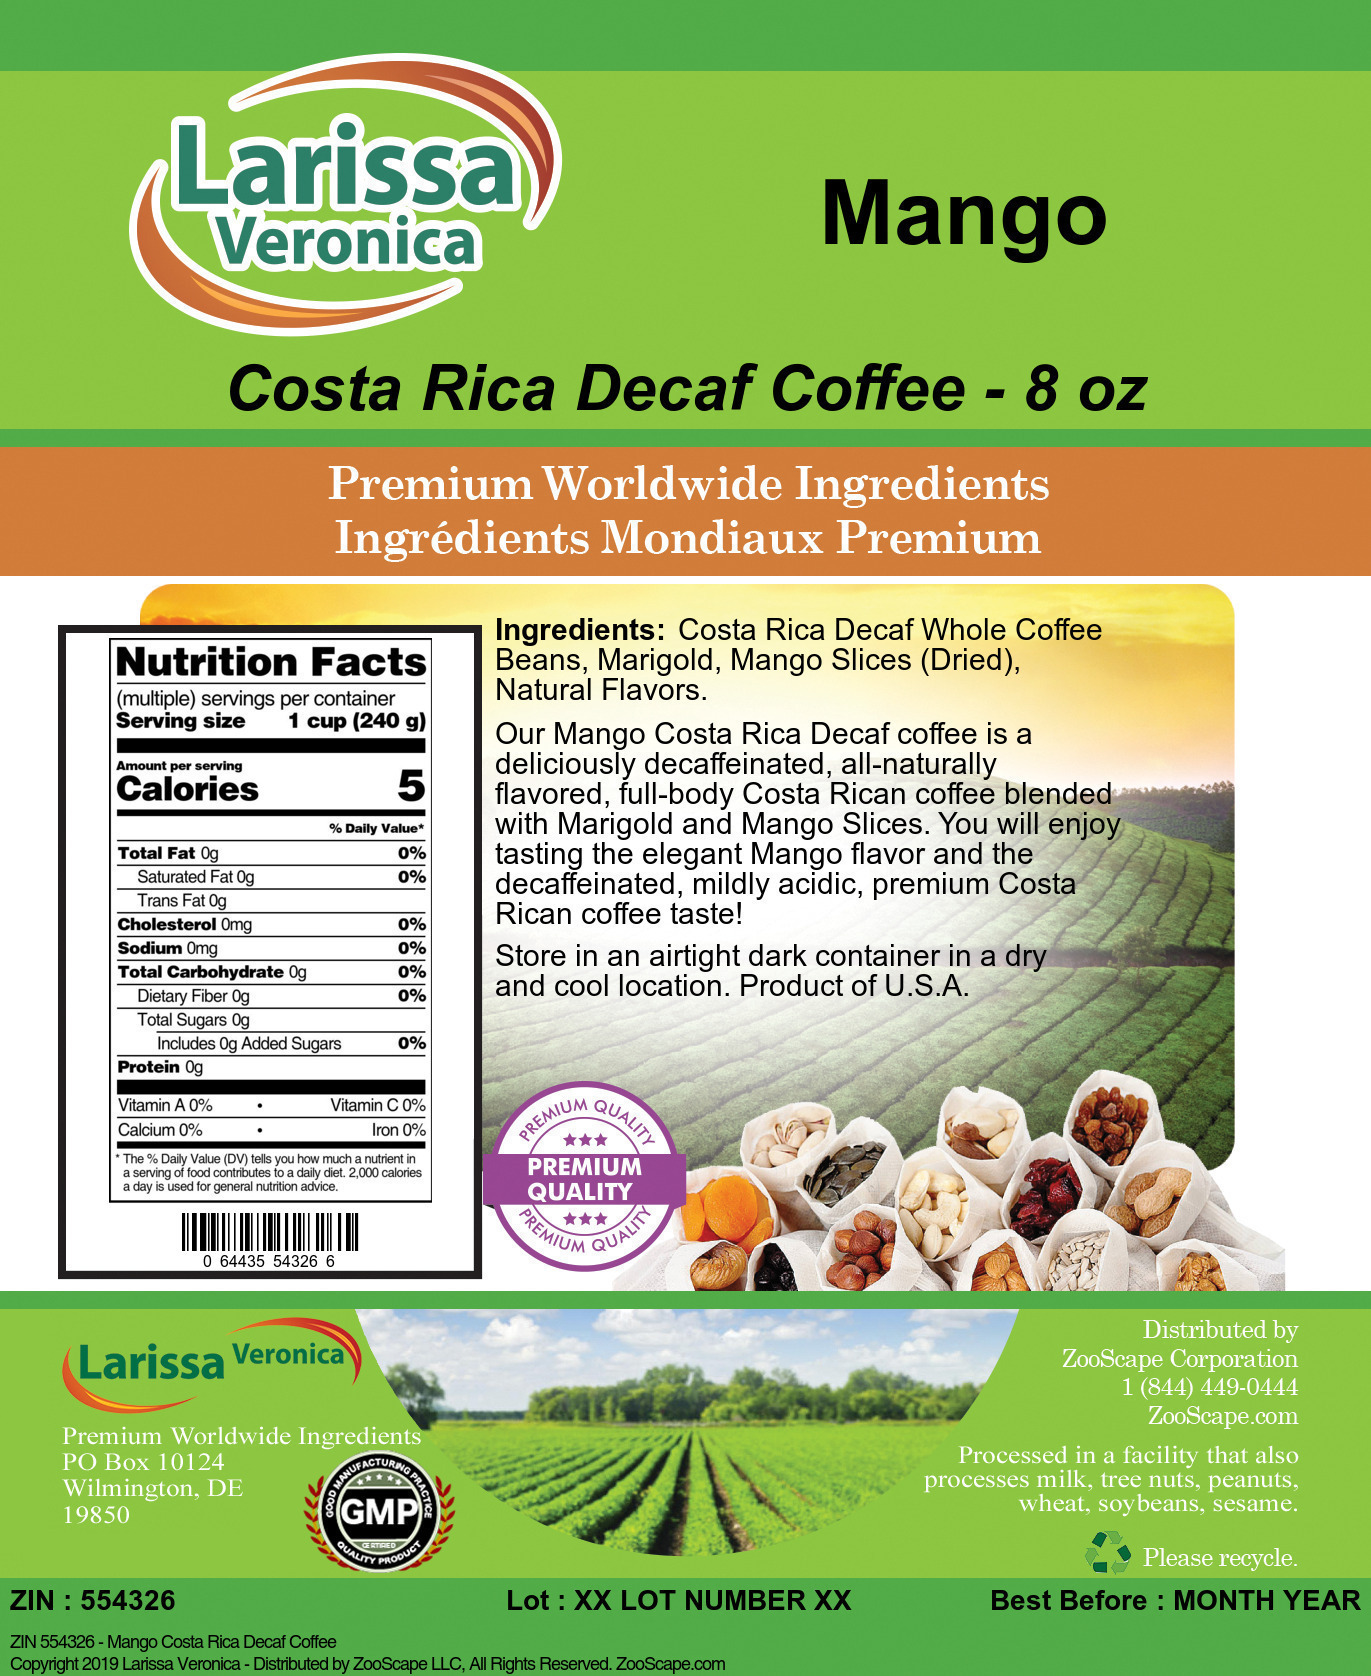 Mango Costa Rica Decaf Coffee - Label